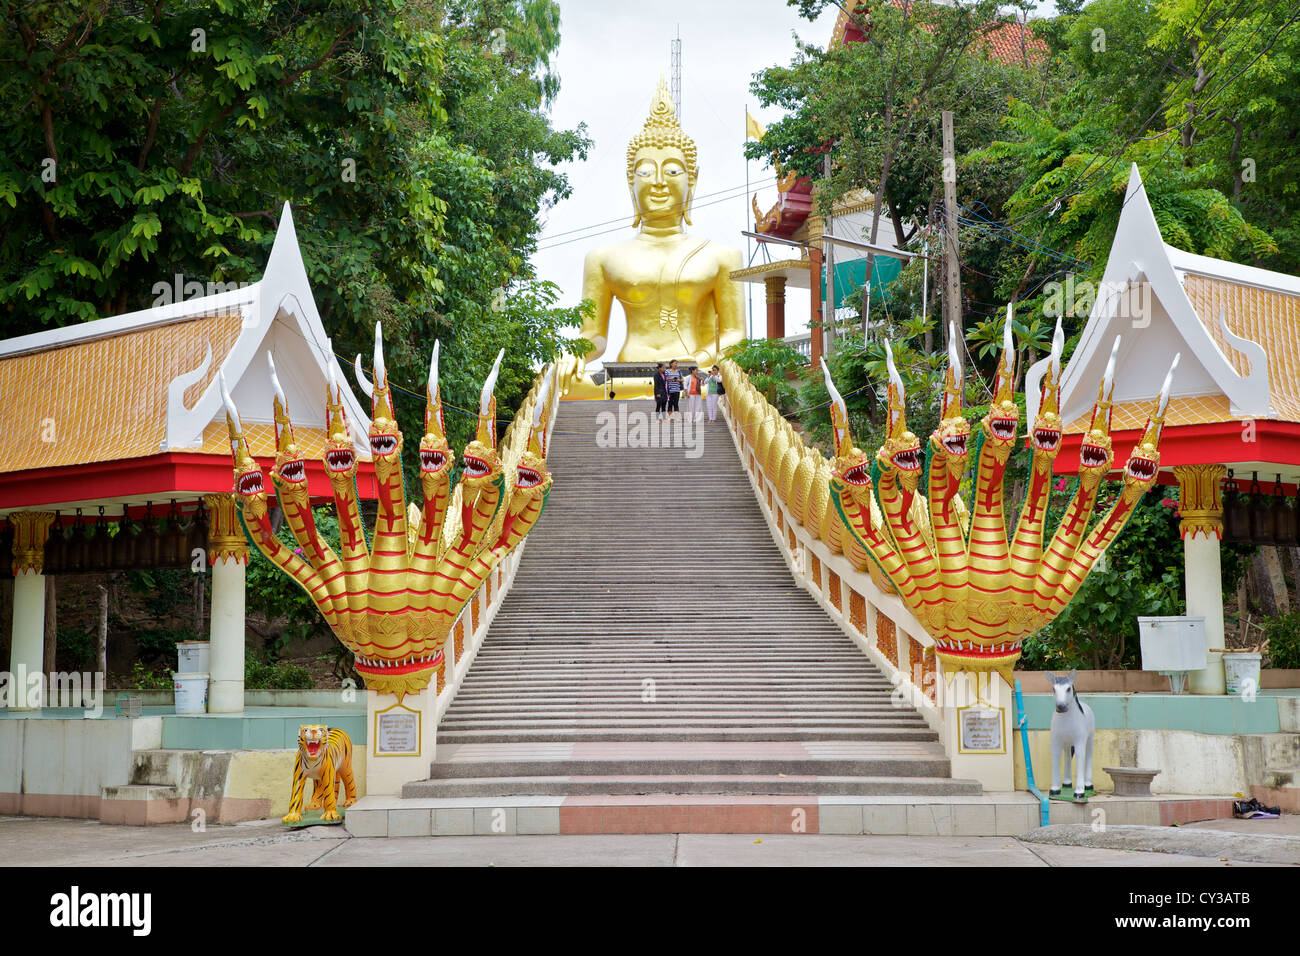 Étapes menant à la statue du Grand Bouddha à Pattaya, Thaïlande Banque D'Images